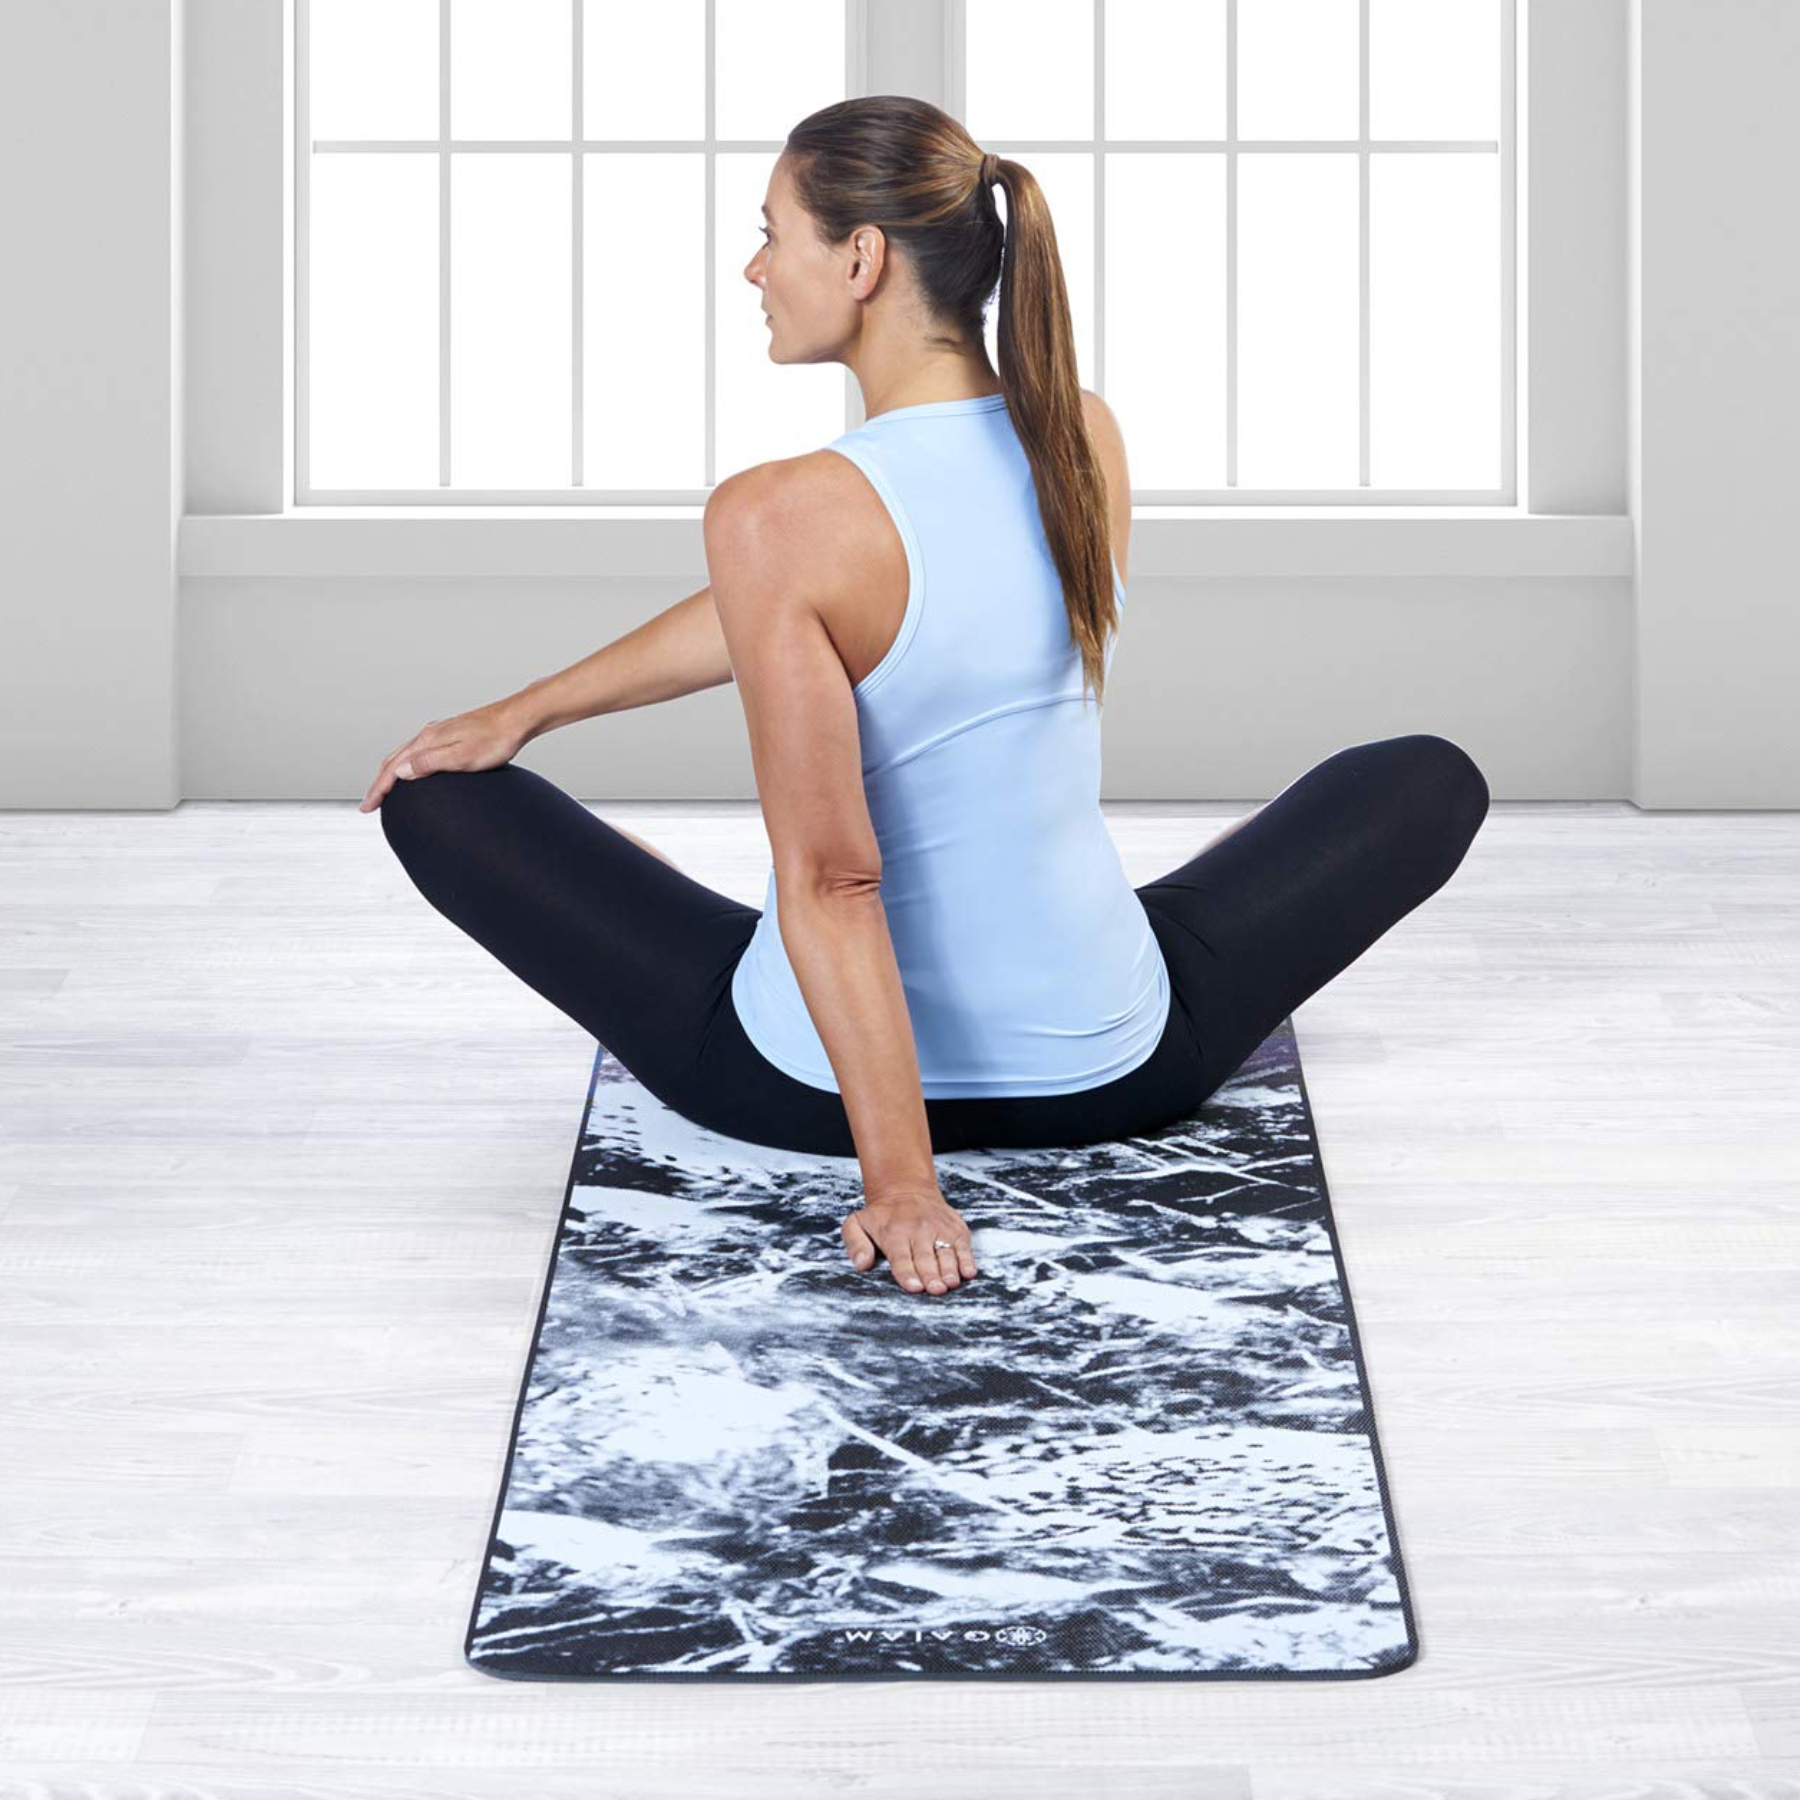 GAIAM 6 mm Premium Yoga Mat - Yoga mat, Buy online